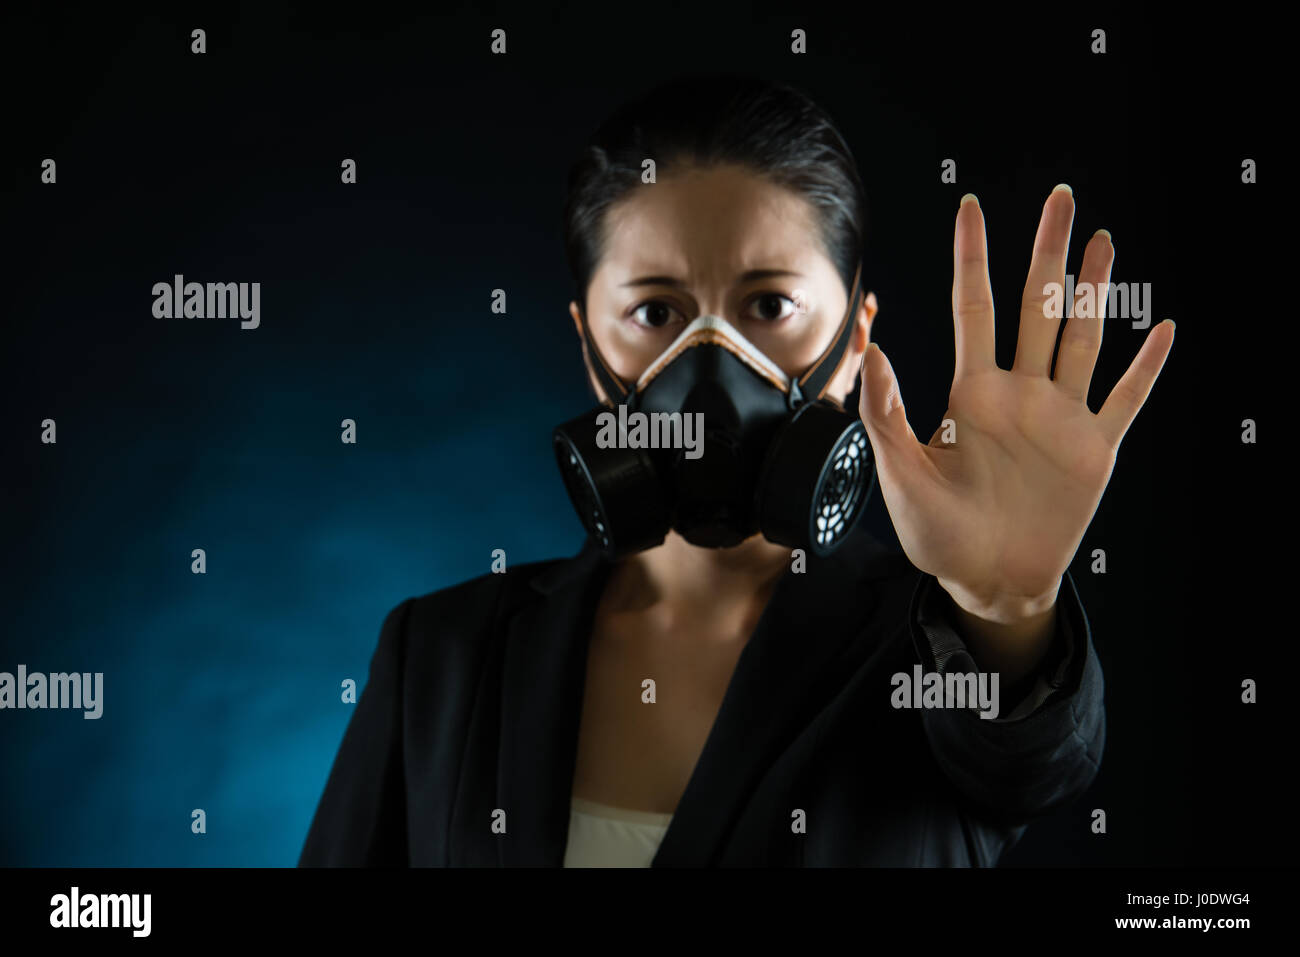 Femme au masque de protection avec des gestes de rejet la main. La pollution atmosphérique sur la santé des gens d'influence de smog. concept de race mixte modèle chinois asiatique Banque D'Images